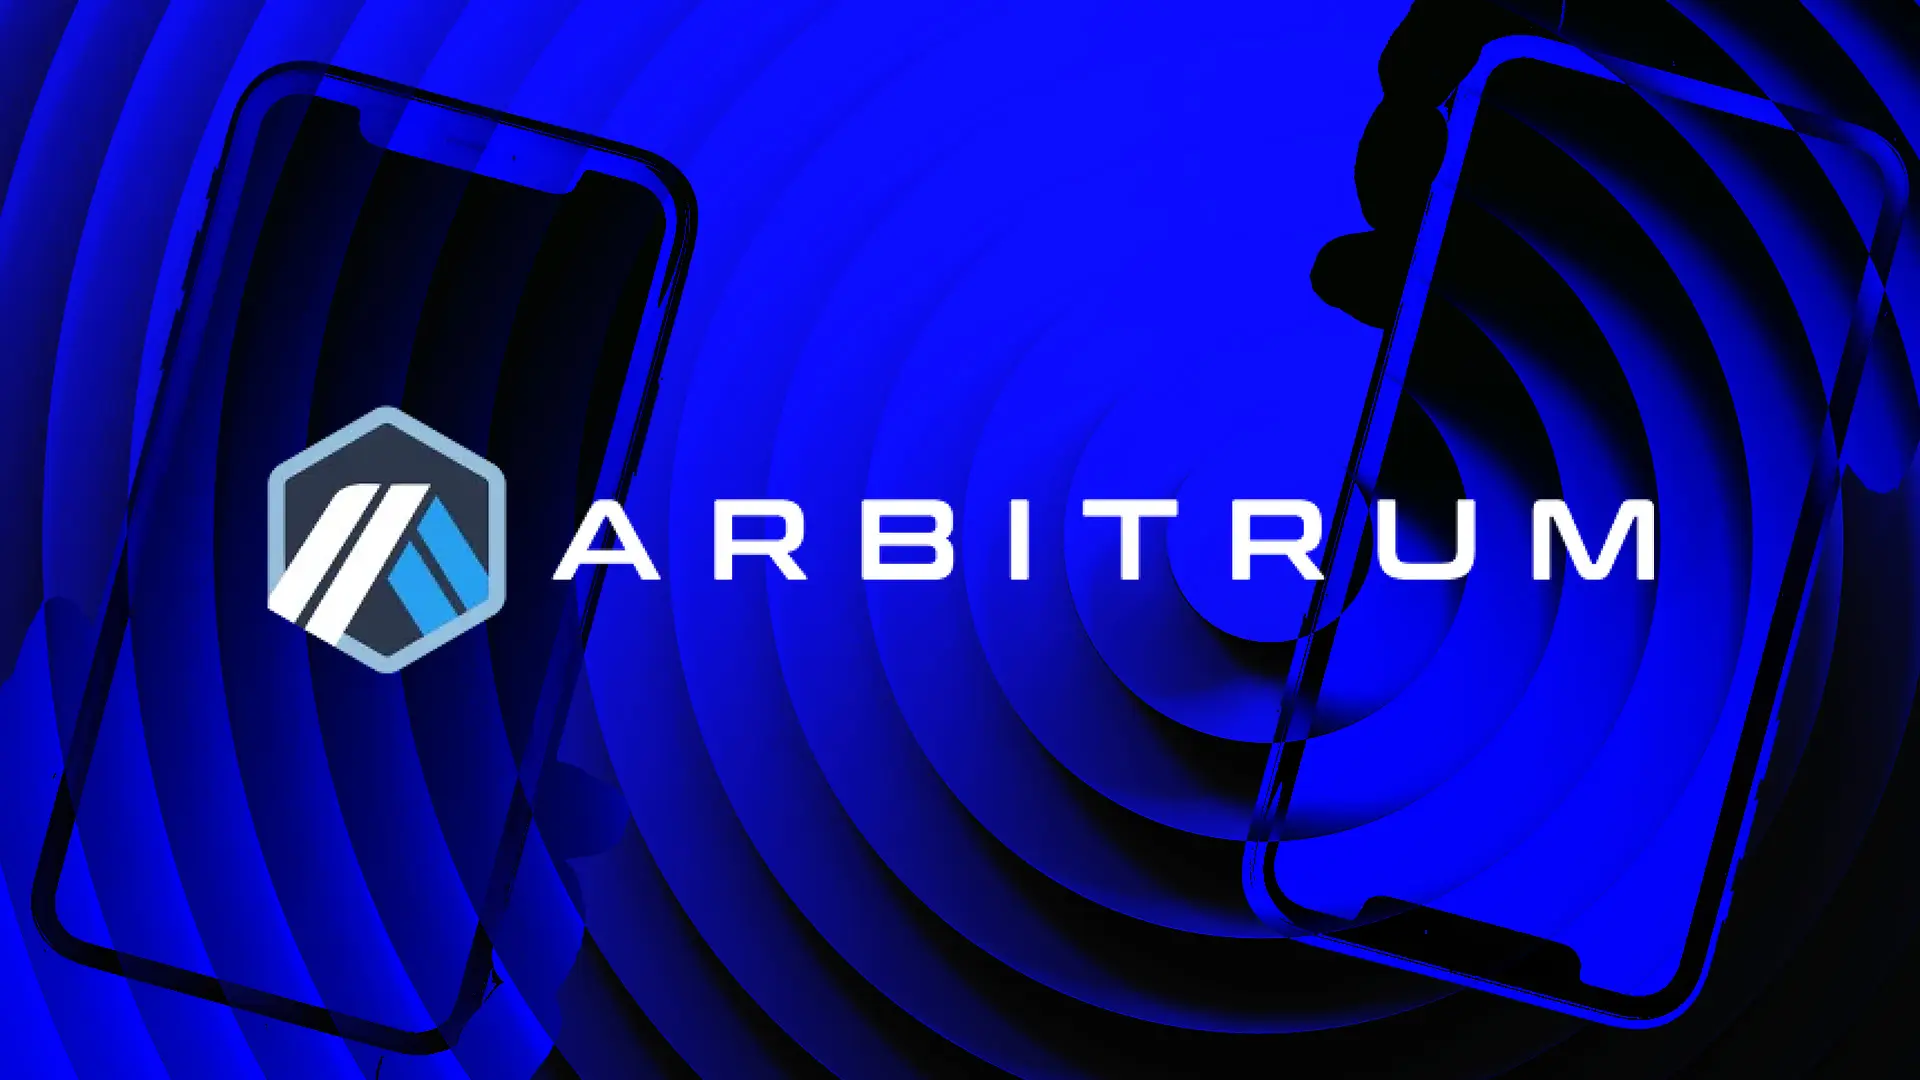 شبكة Arbitrum ستطلق عملة ARB الخاصة بها.. فما هي تفاصيل هذا الايردروب؟